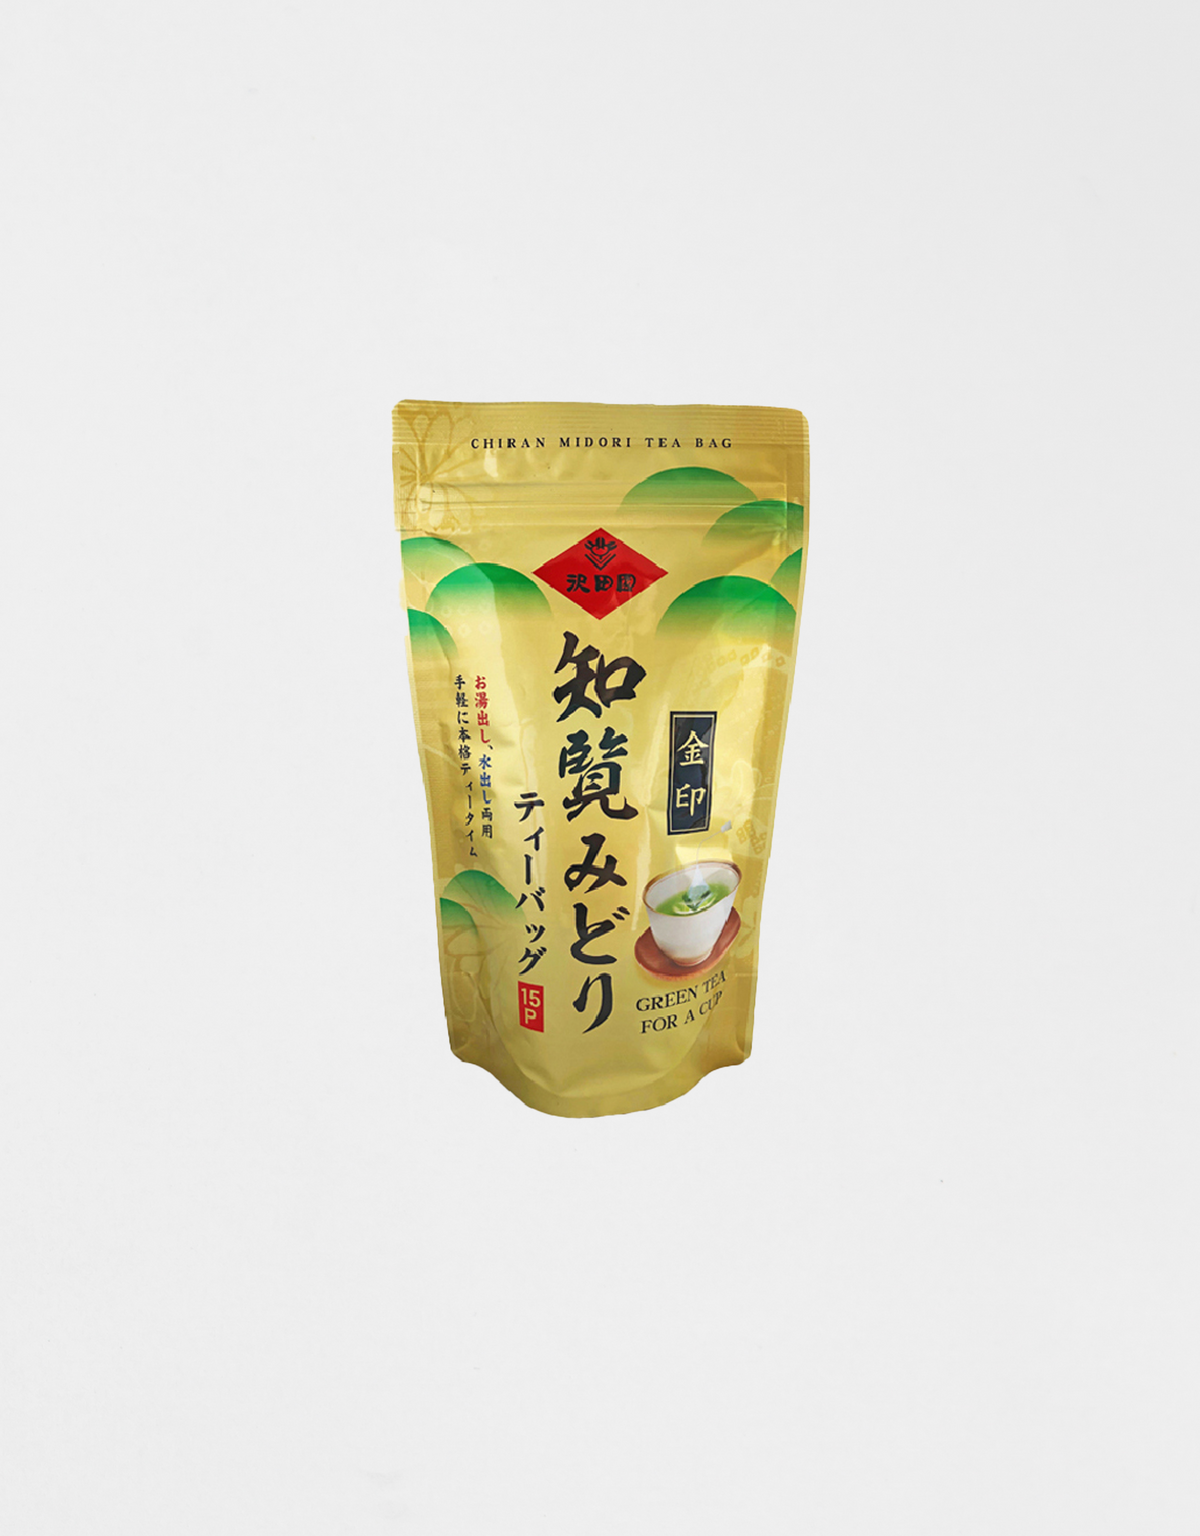 Chiran Midori Kinjirushi tea bag